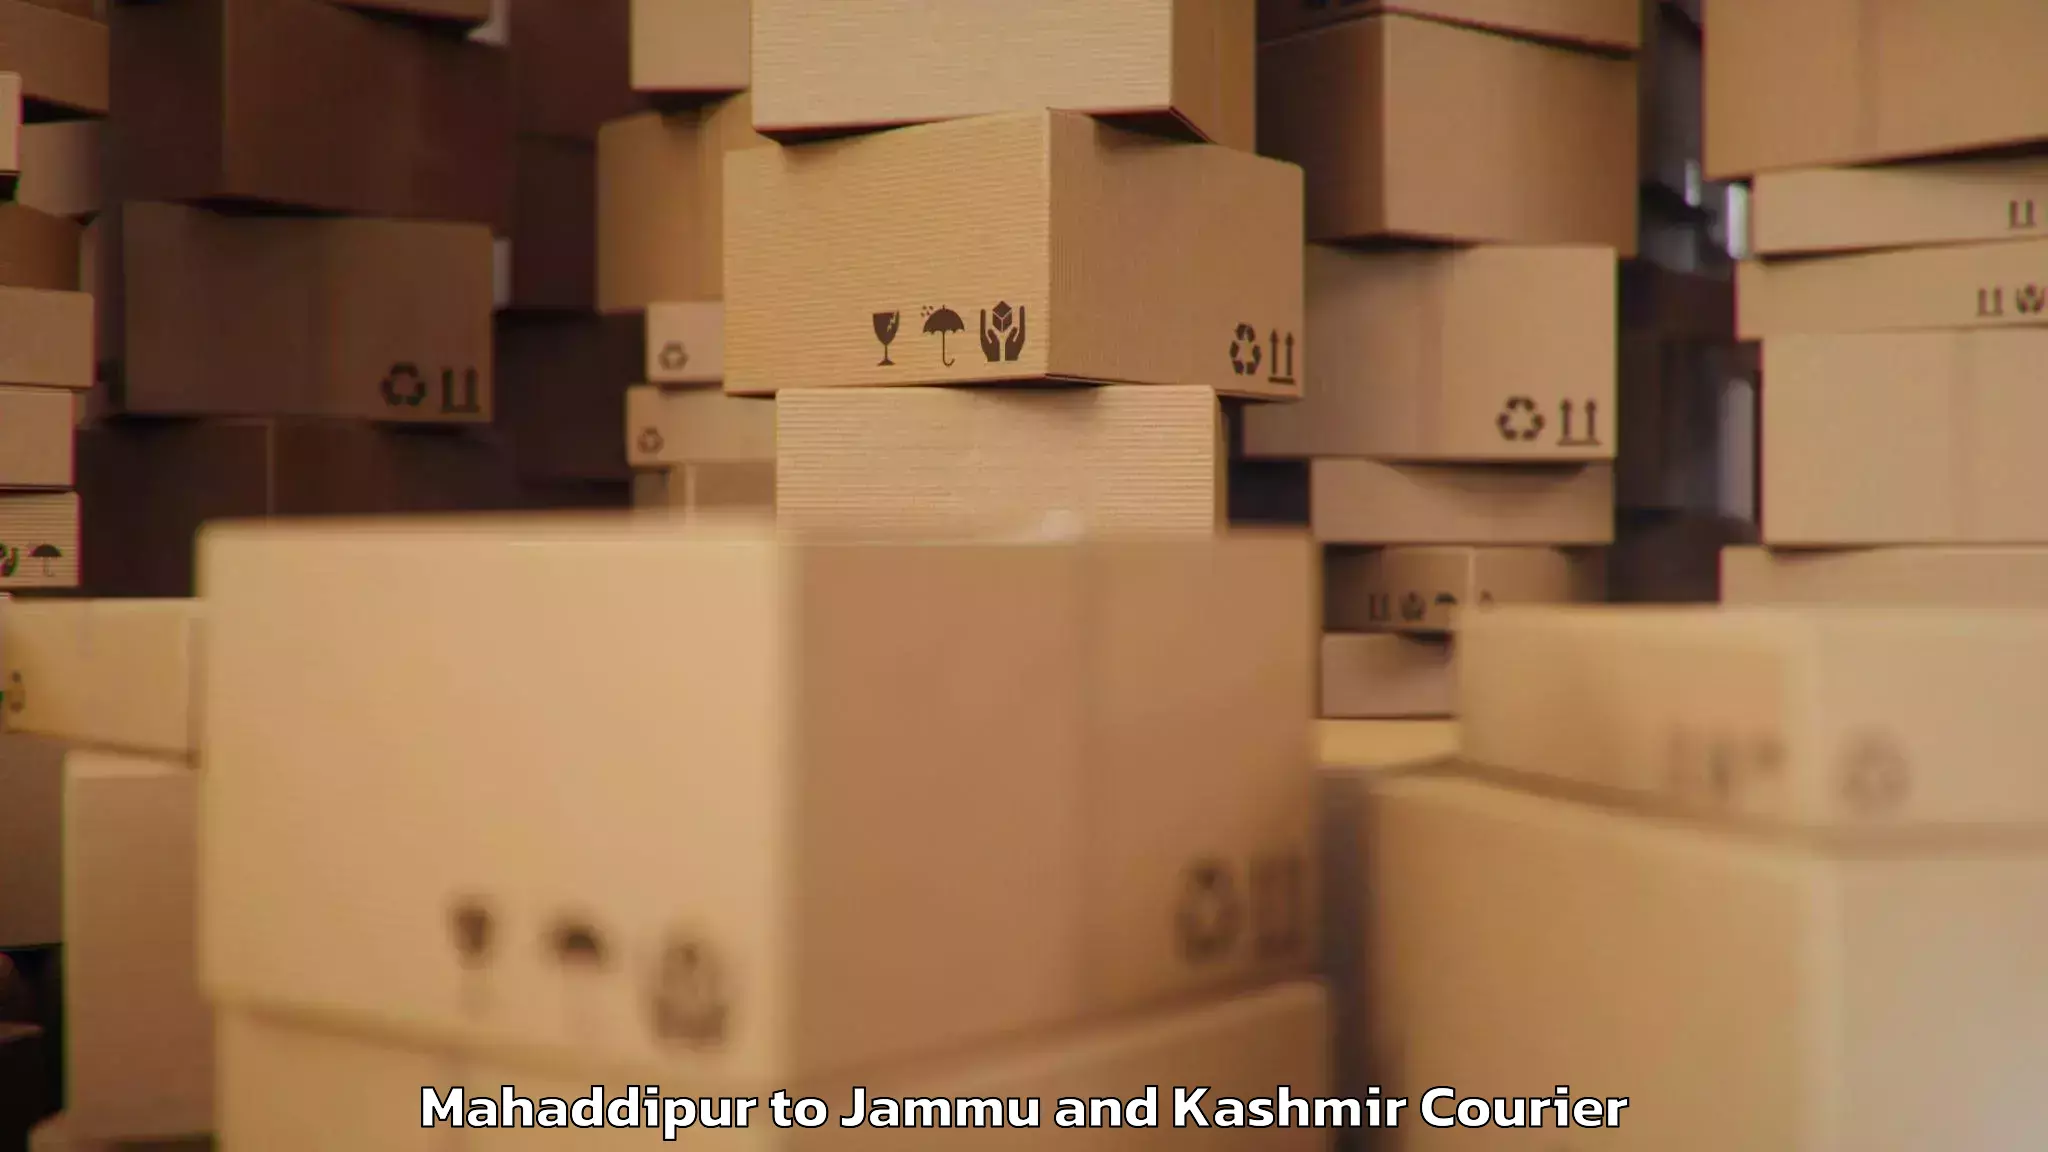 Baggage shipping advice Mahaddipur to Jammu and Kashmir